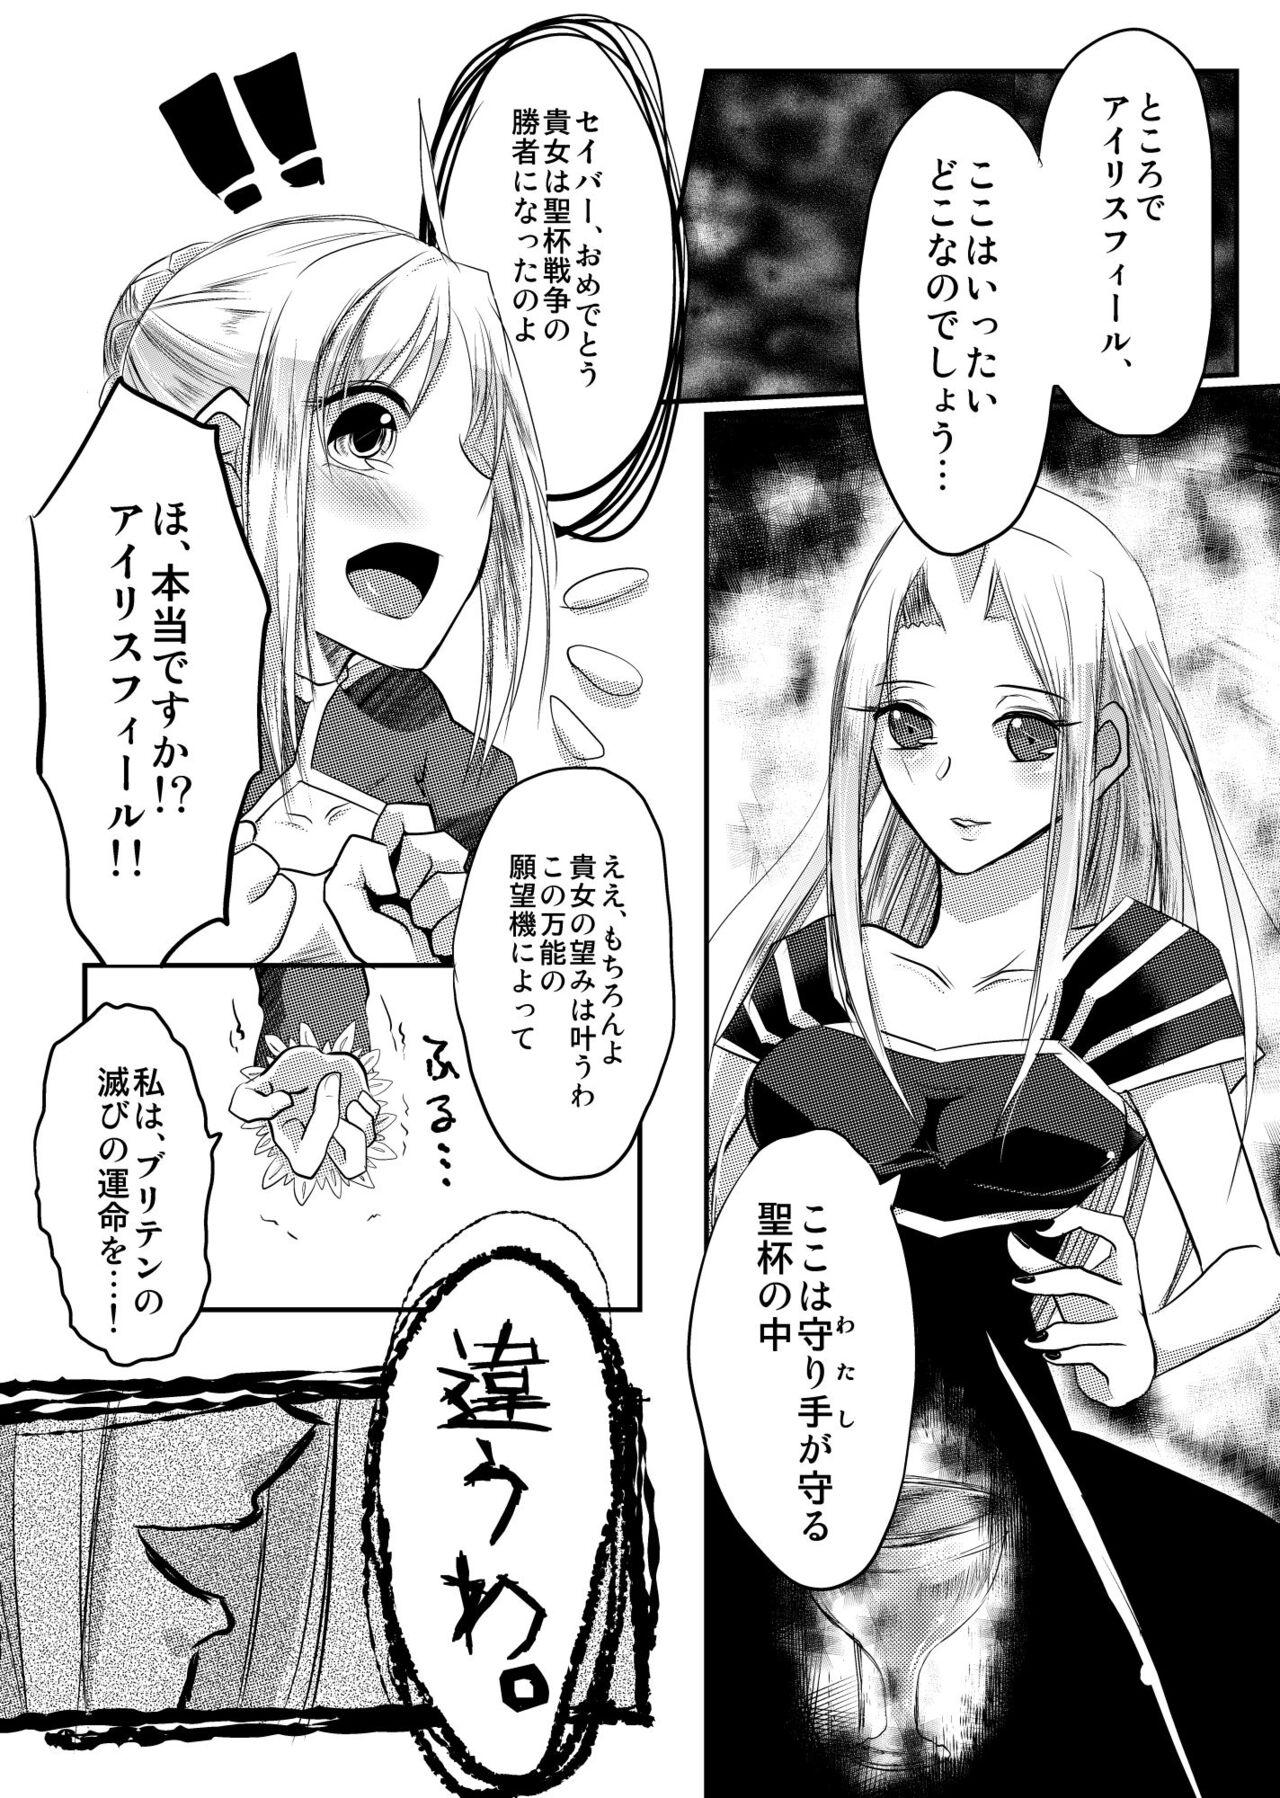 Milf Cougar Daraku no Hana - Fate zero Camgirl - Page 7